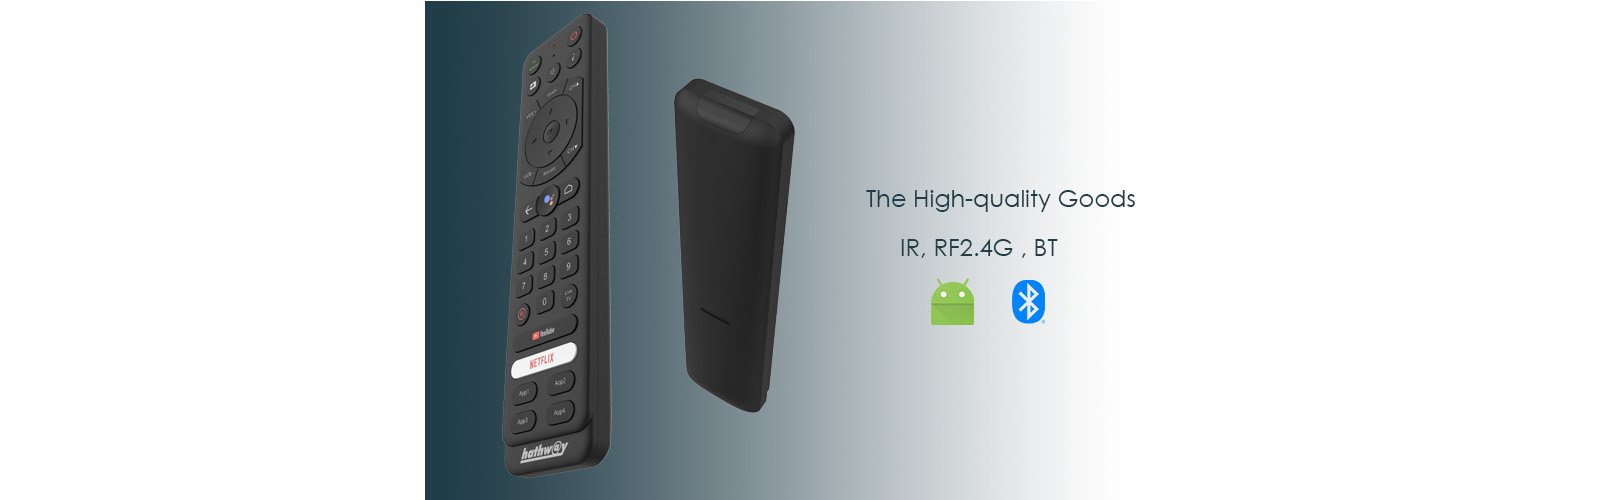 RF2.4G bluetooth remote control